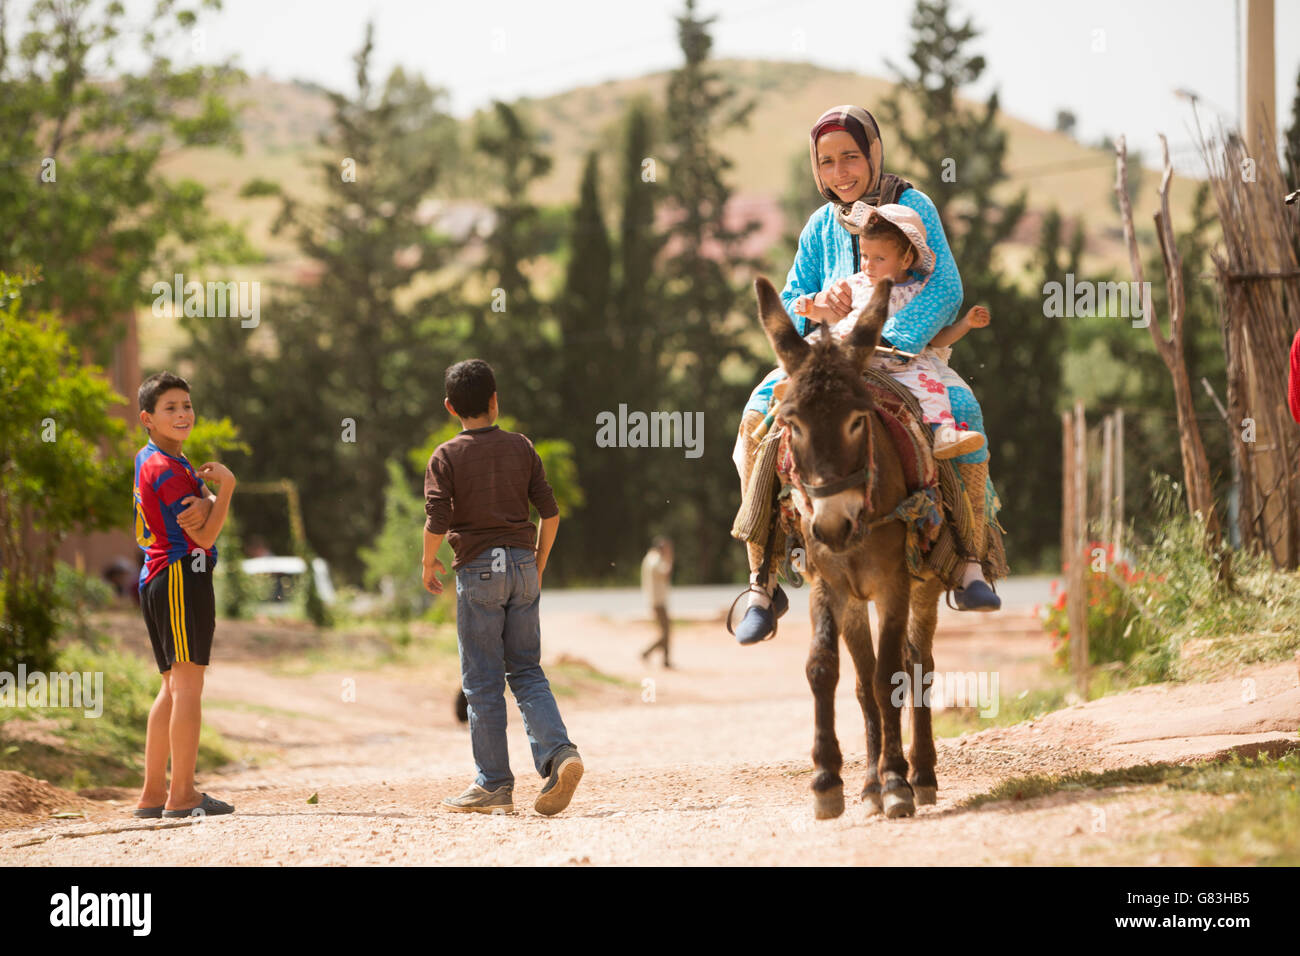 Eine Frau und ihr Kind reiten einen Esel auf einer unbefestigten Straße in das Dorf Ben Khili, Marokko. Stockfoto